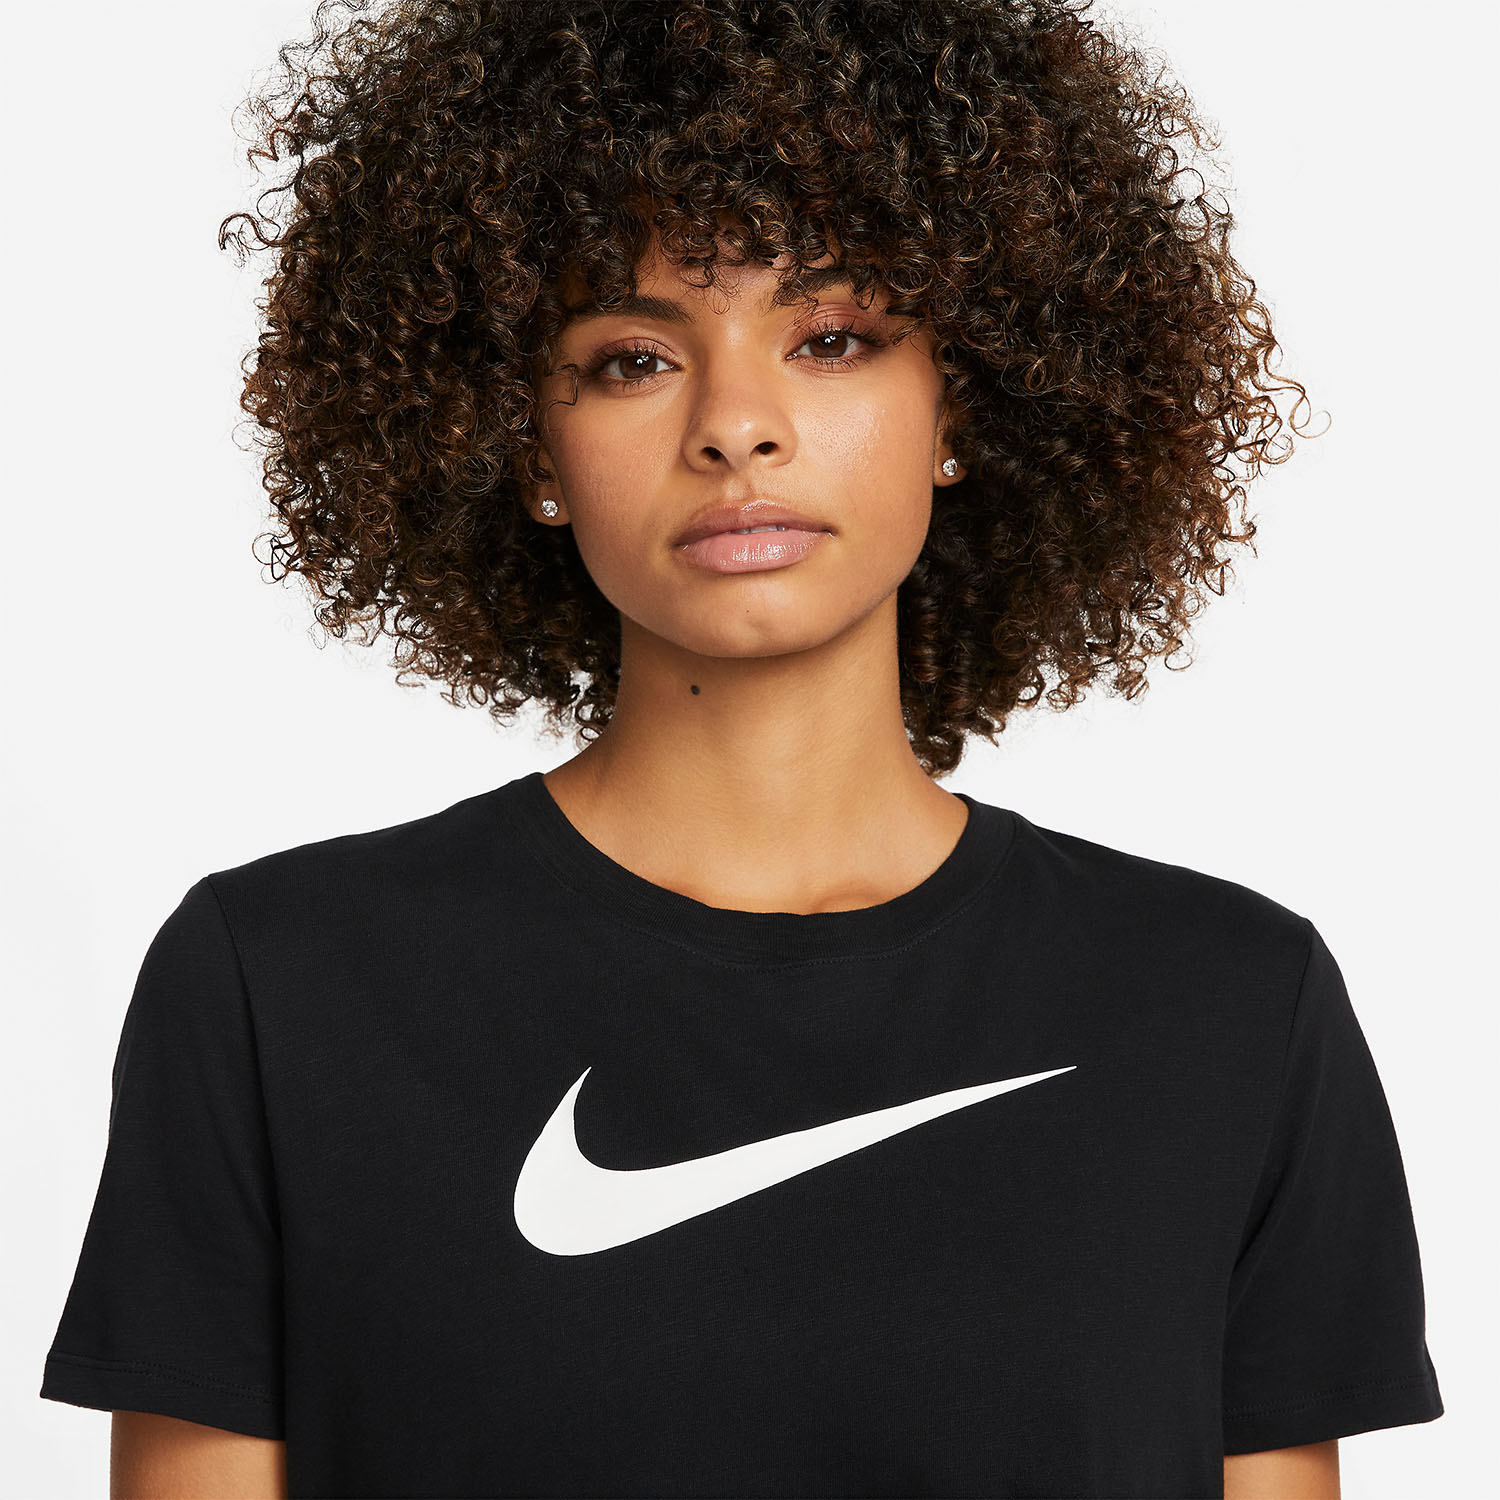 Nike Dri-FIT T-Shirt - Black/White